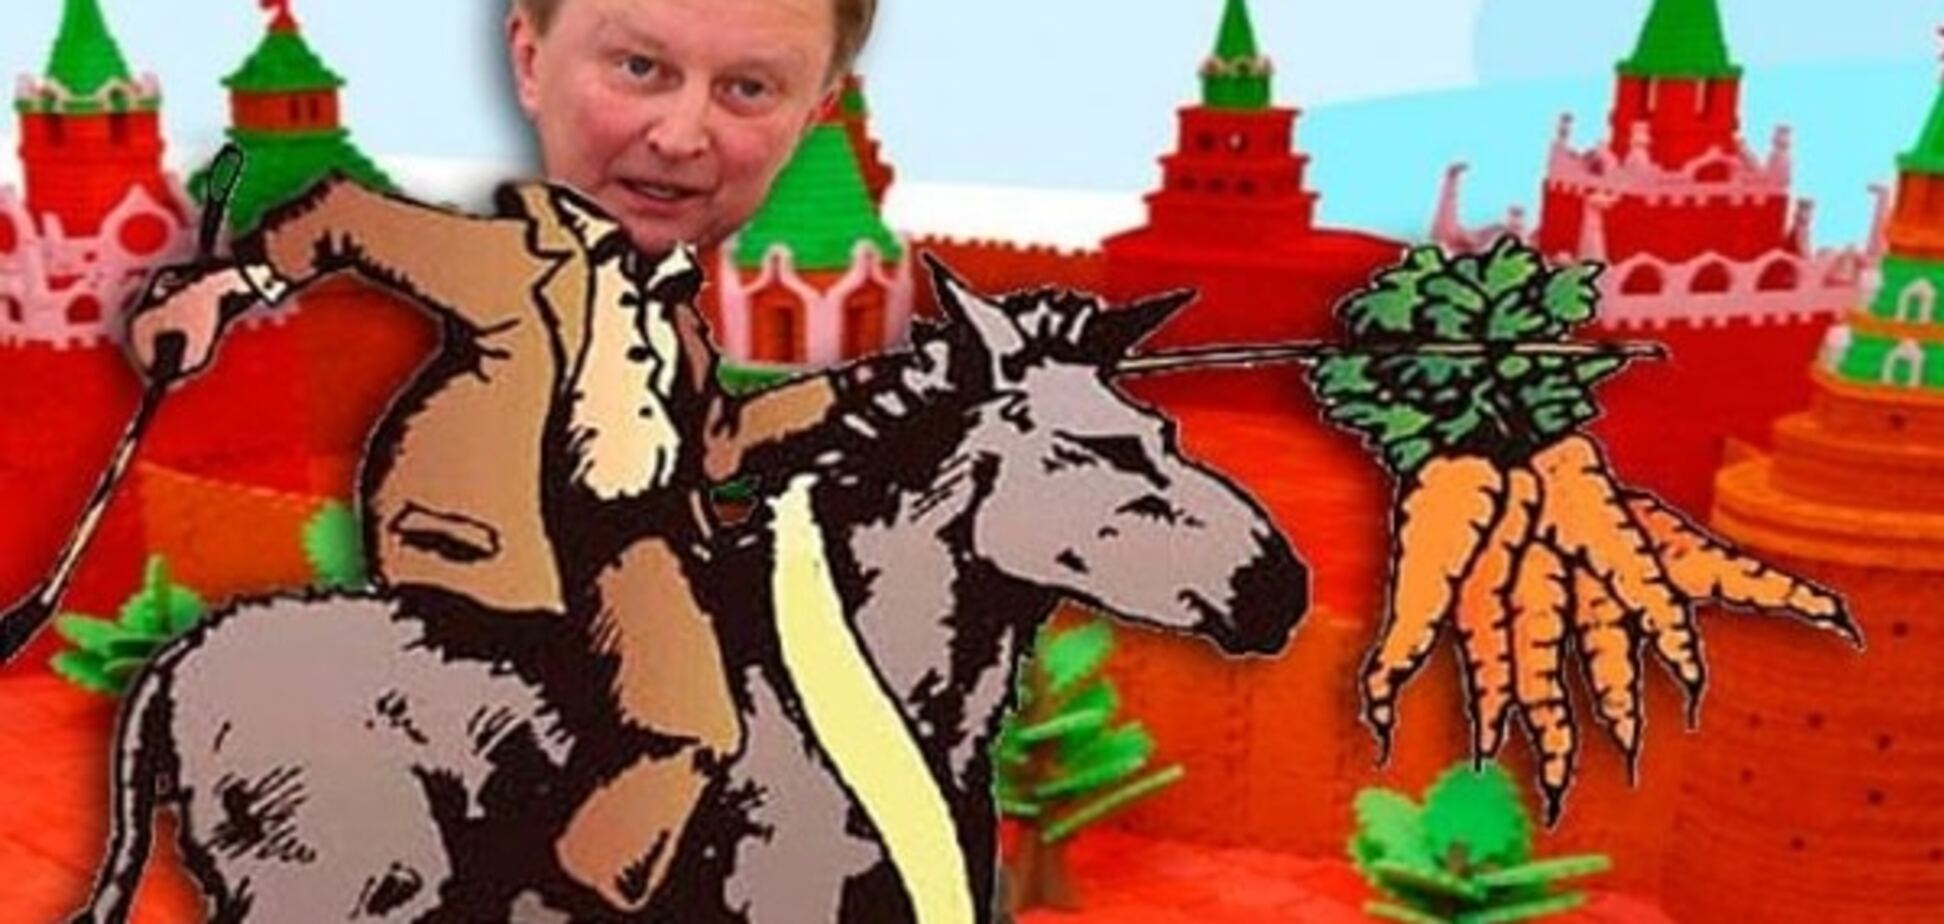 Портников: в Кремле не понимают, кто на самом деле 'придаток' цивилизации